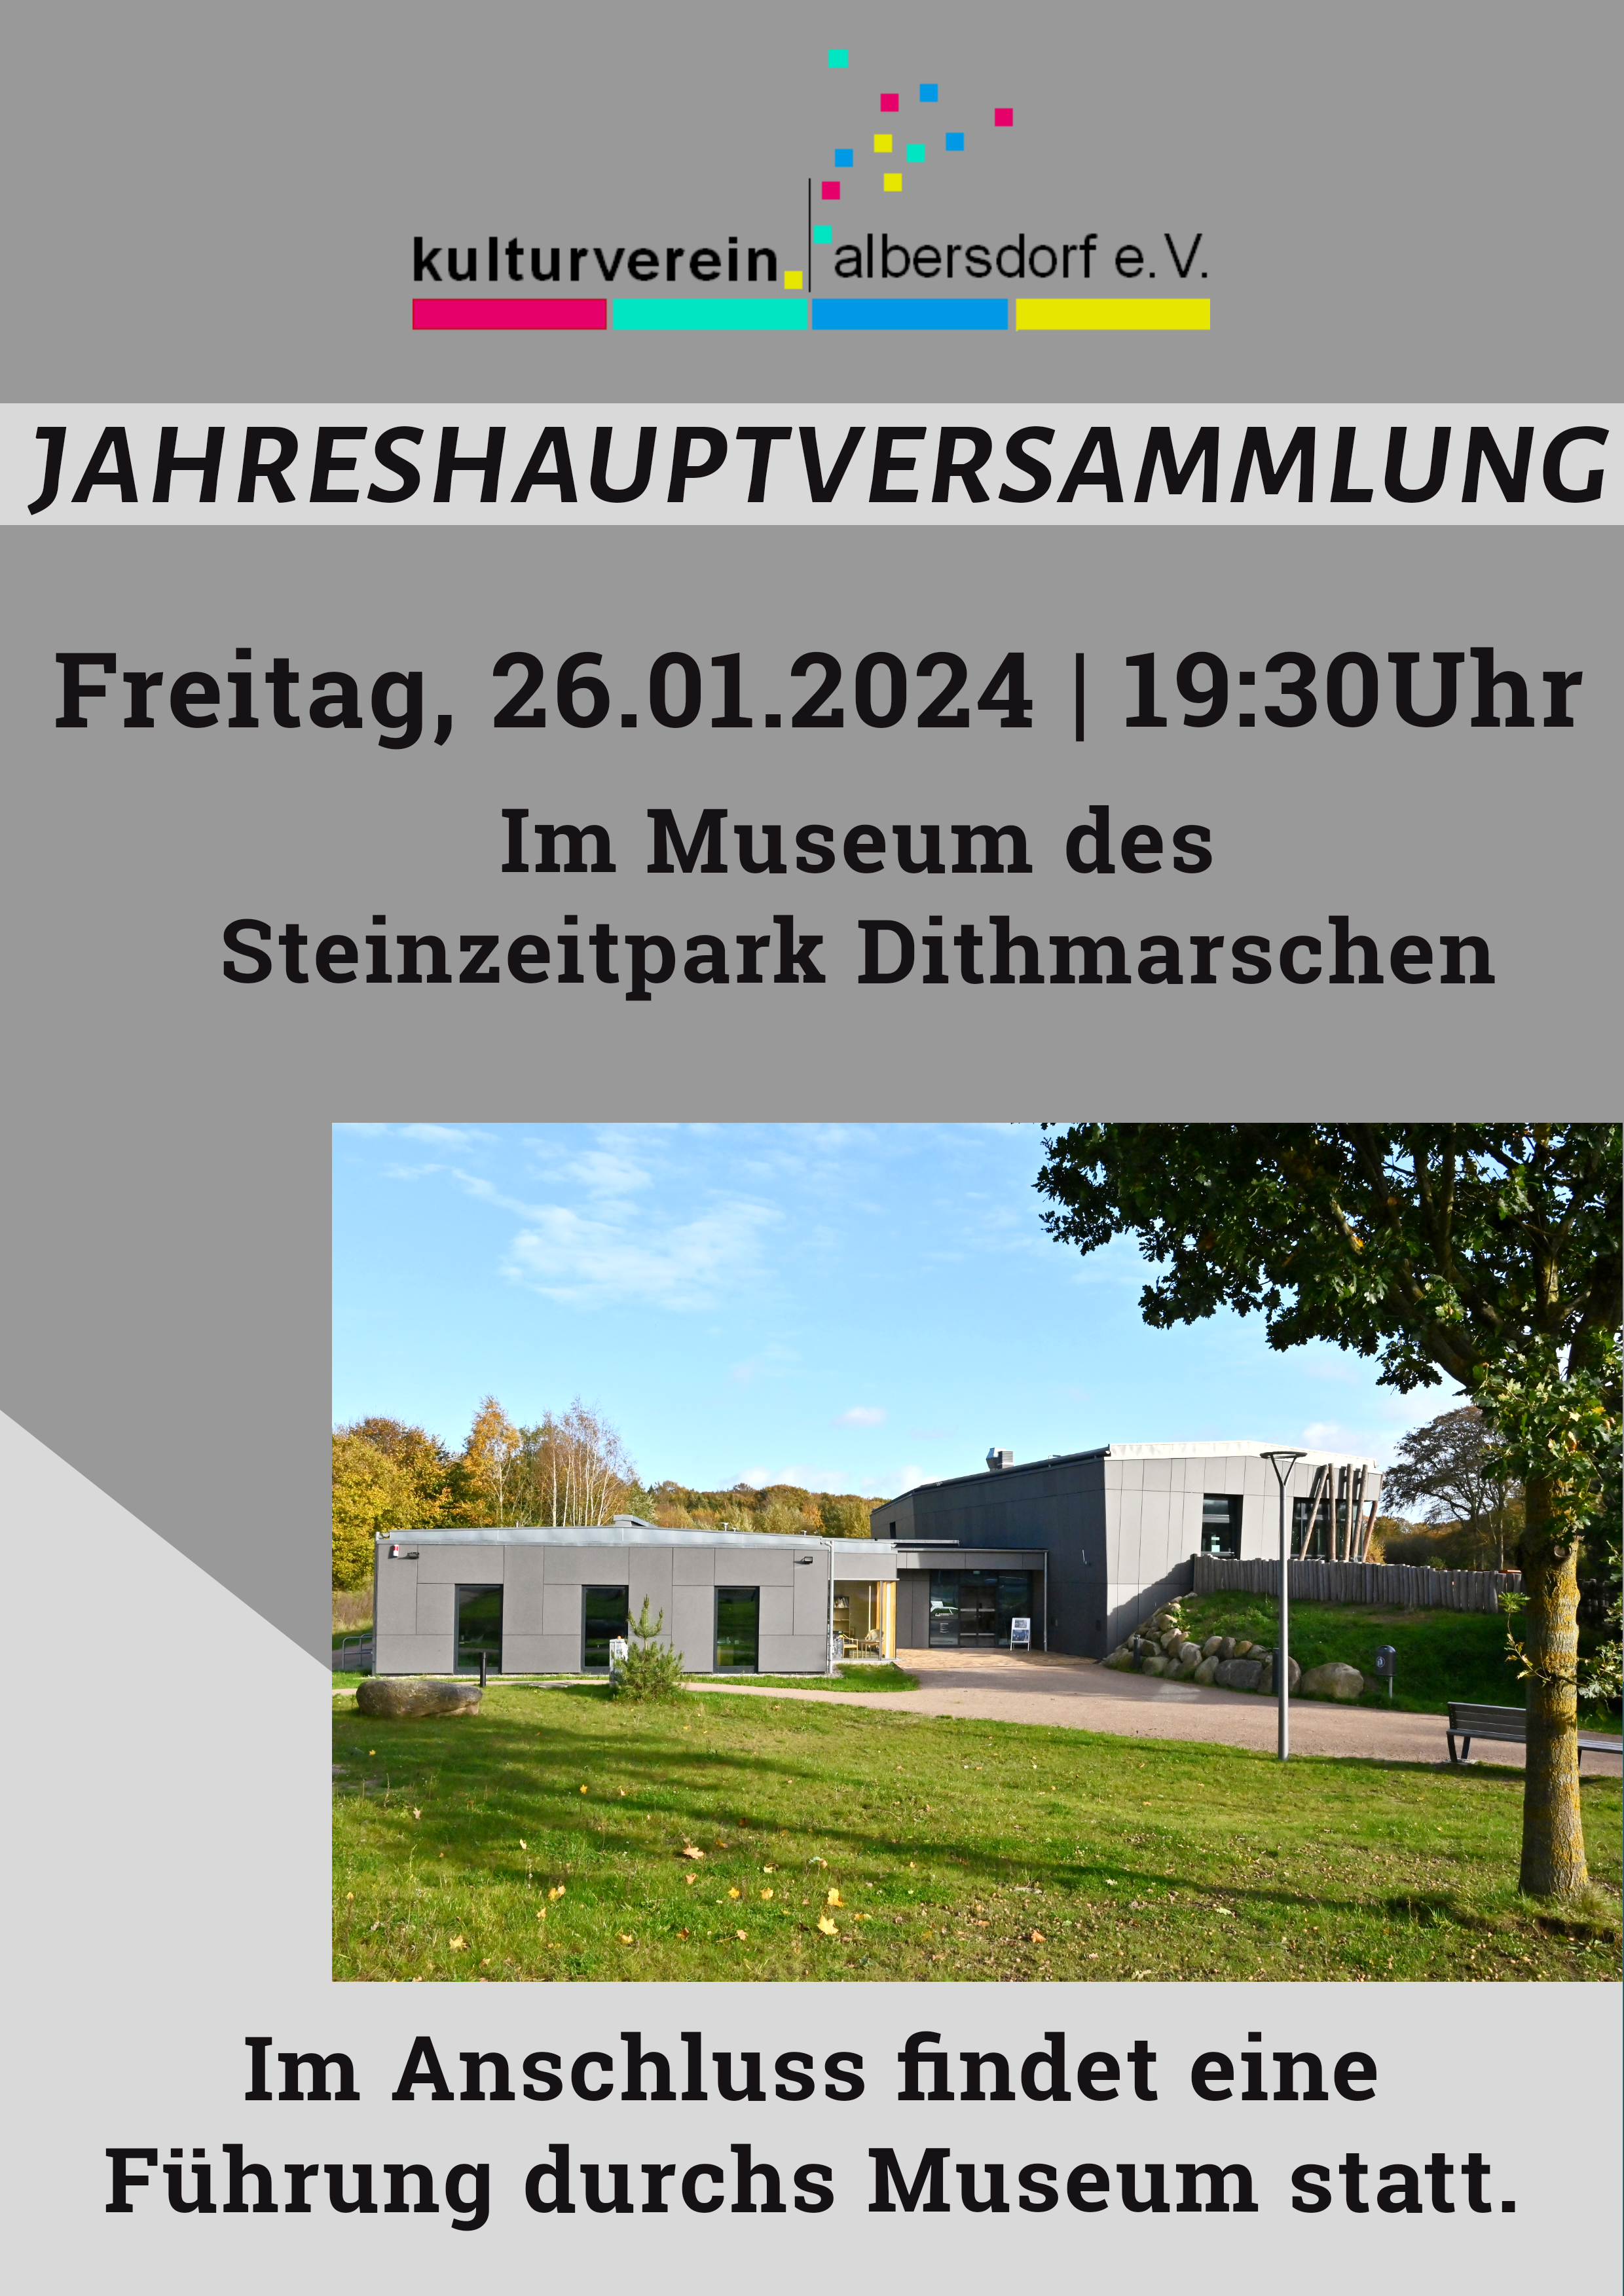 Jahreshauptversammlung des Kulturverein Albersdorf am 26.01.2024 um 19:30 Uhr